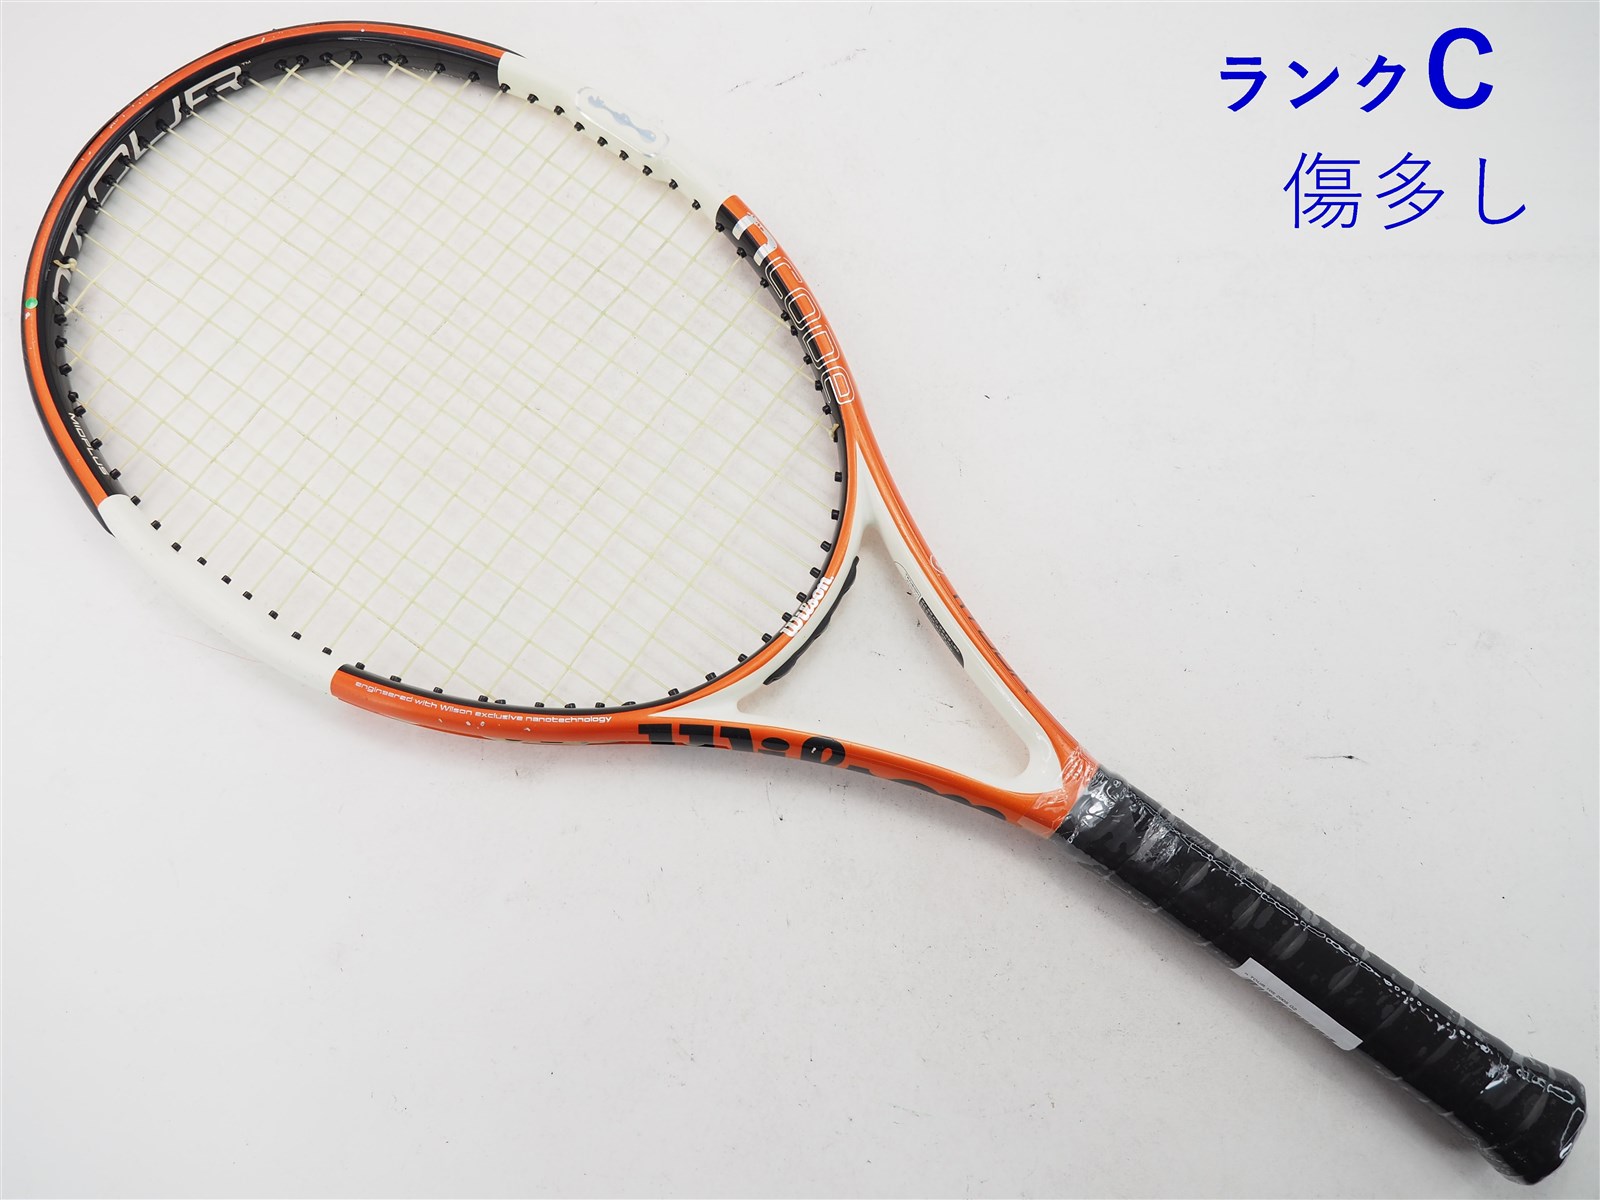 テニスラケット ウィルソン K フォー 112 2007年モデル (G2)WILSON K